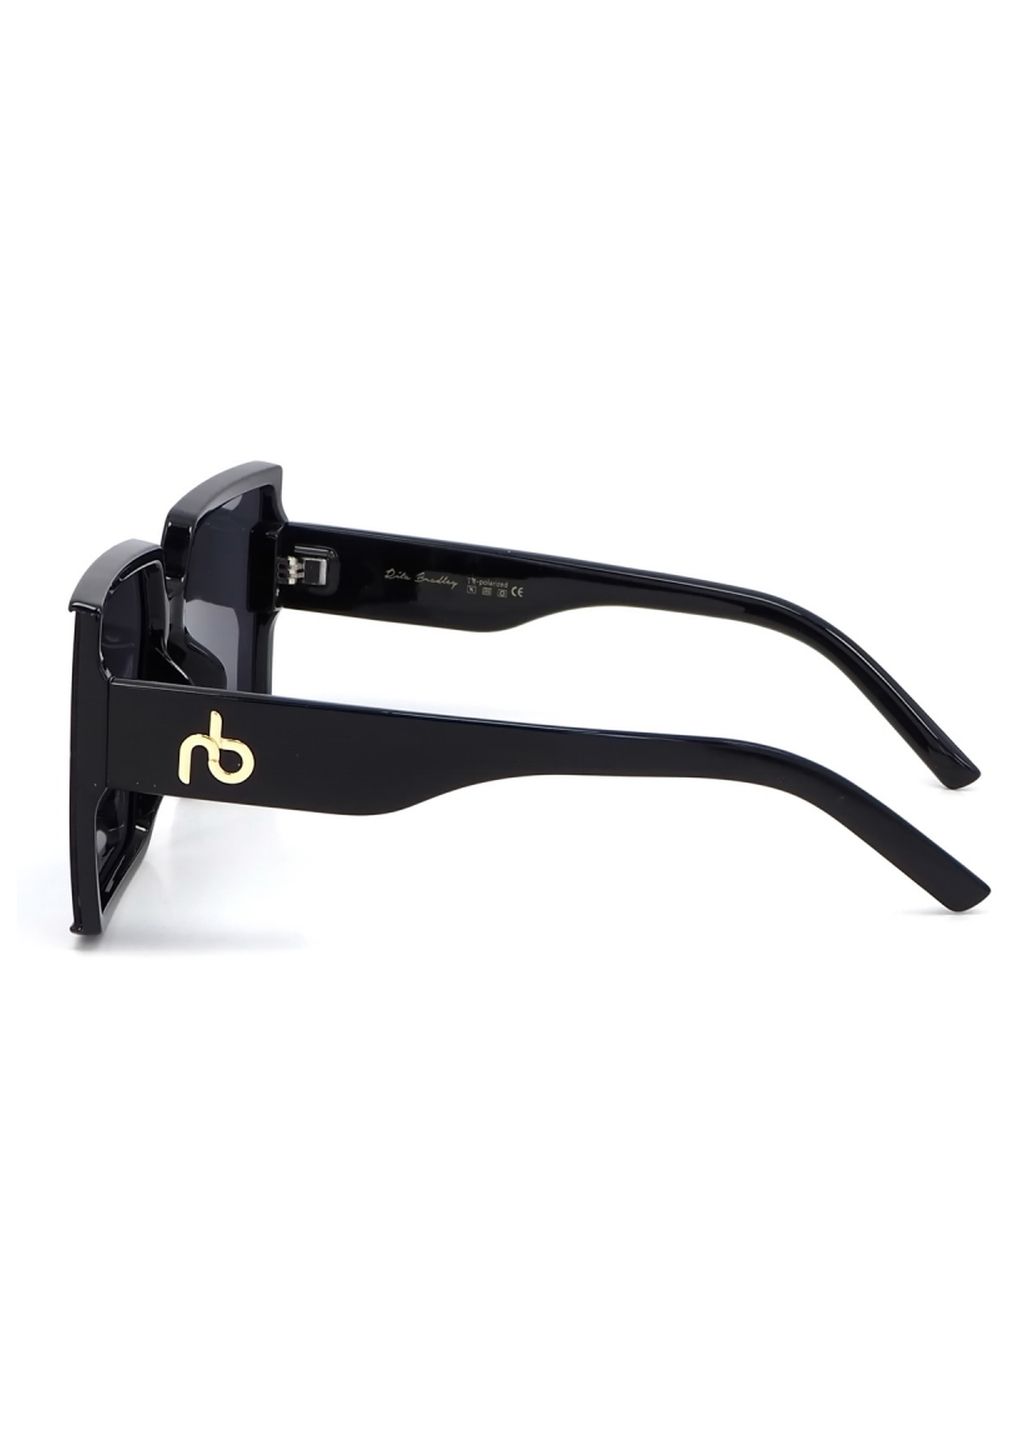 Купить Женские солнцезащитные очки Rita Bradley с поляризацией RB724 112042 в интернет-магазине